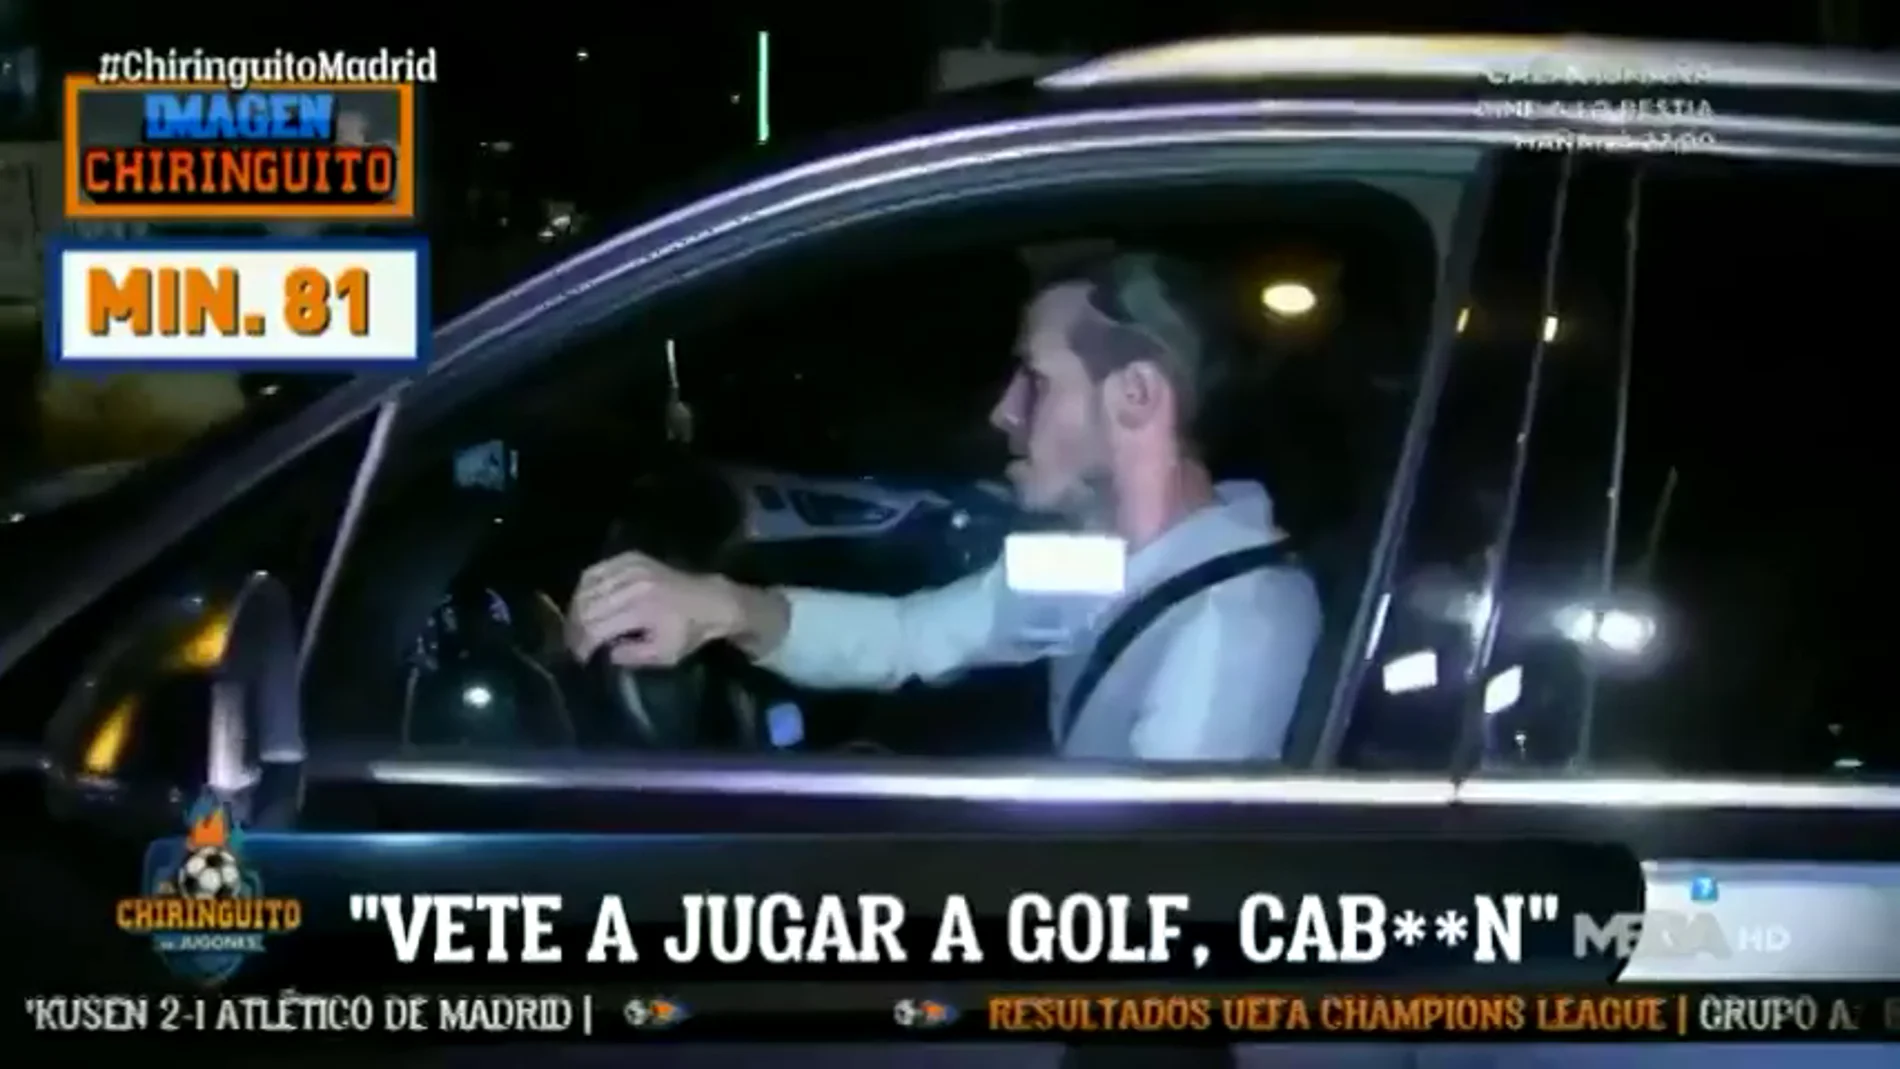 Increpan a Gareth Bale por salir del Bernabéu antes de tiempo: "Vete a jugar al golf, cab***"